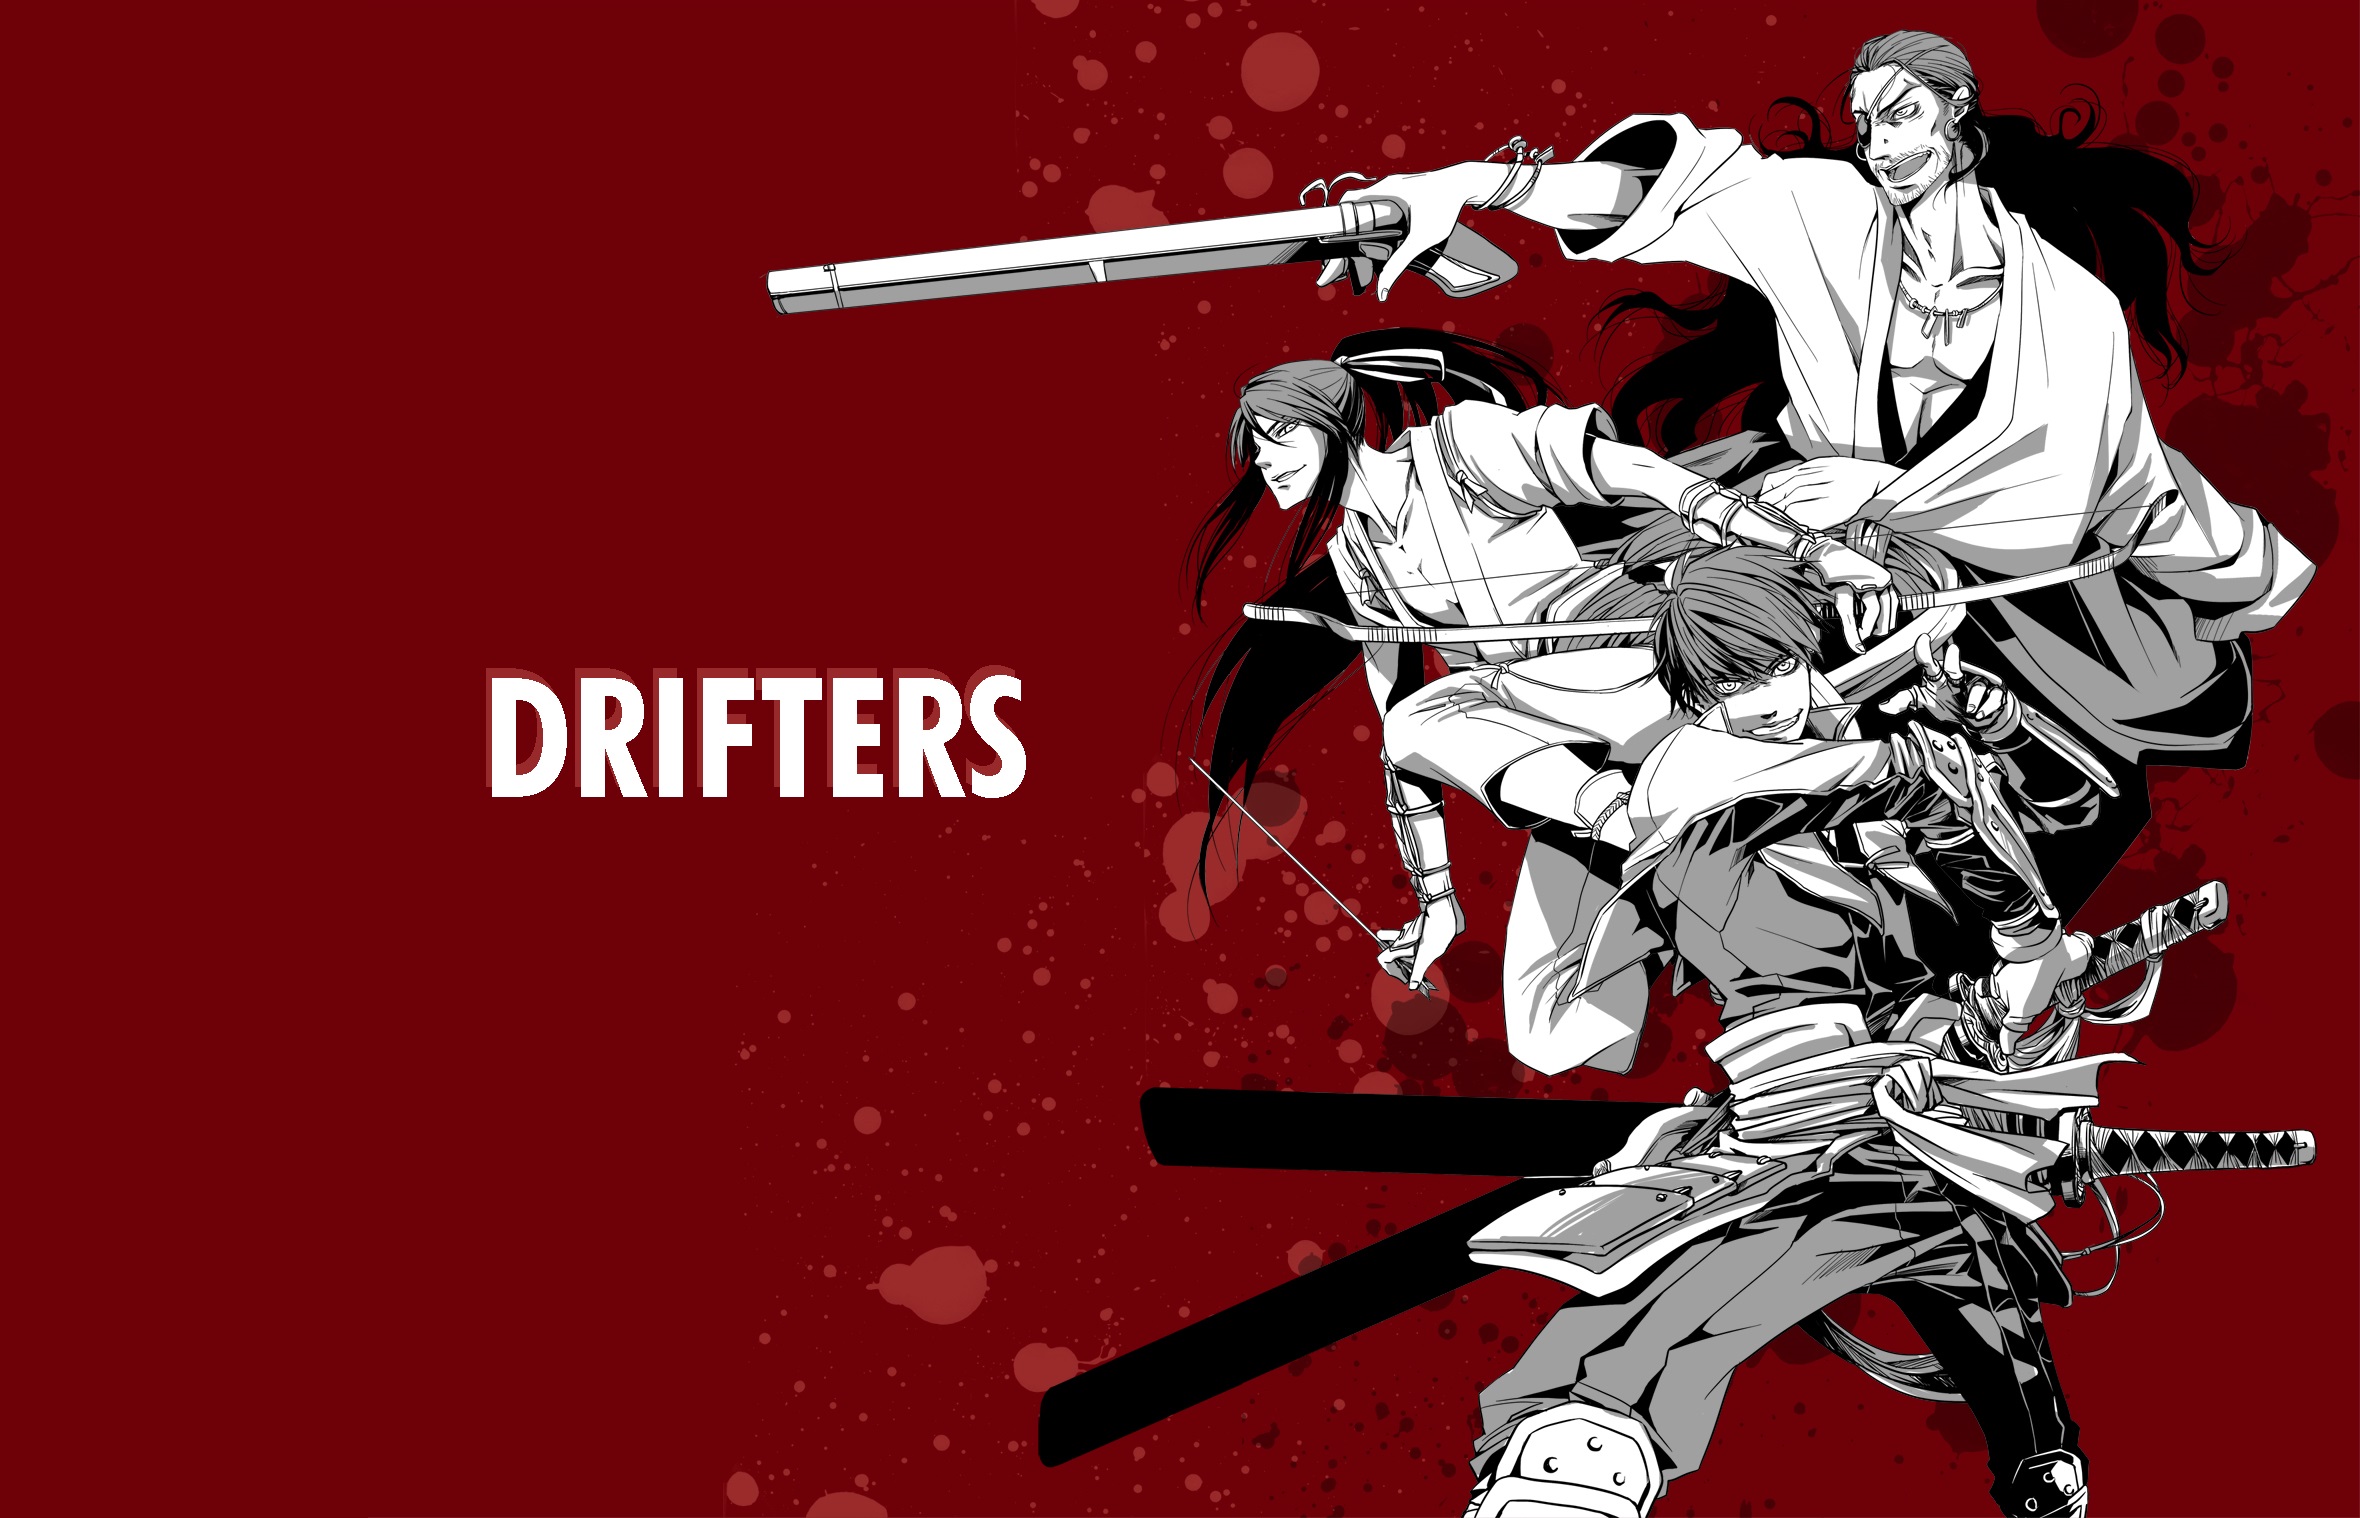 Anime #Drifters #1080P #wallpaper #hdwallpaper #desktop